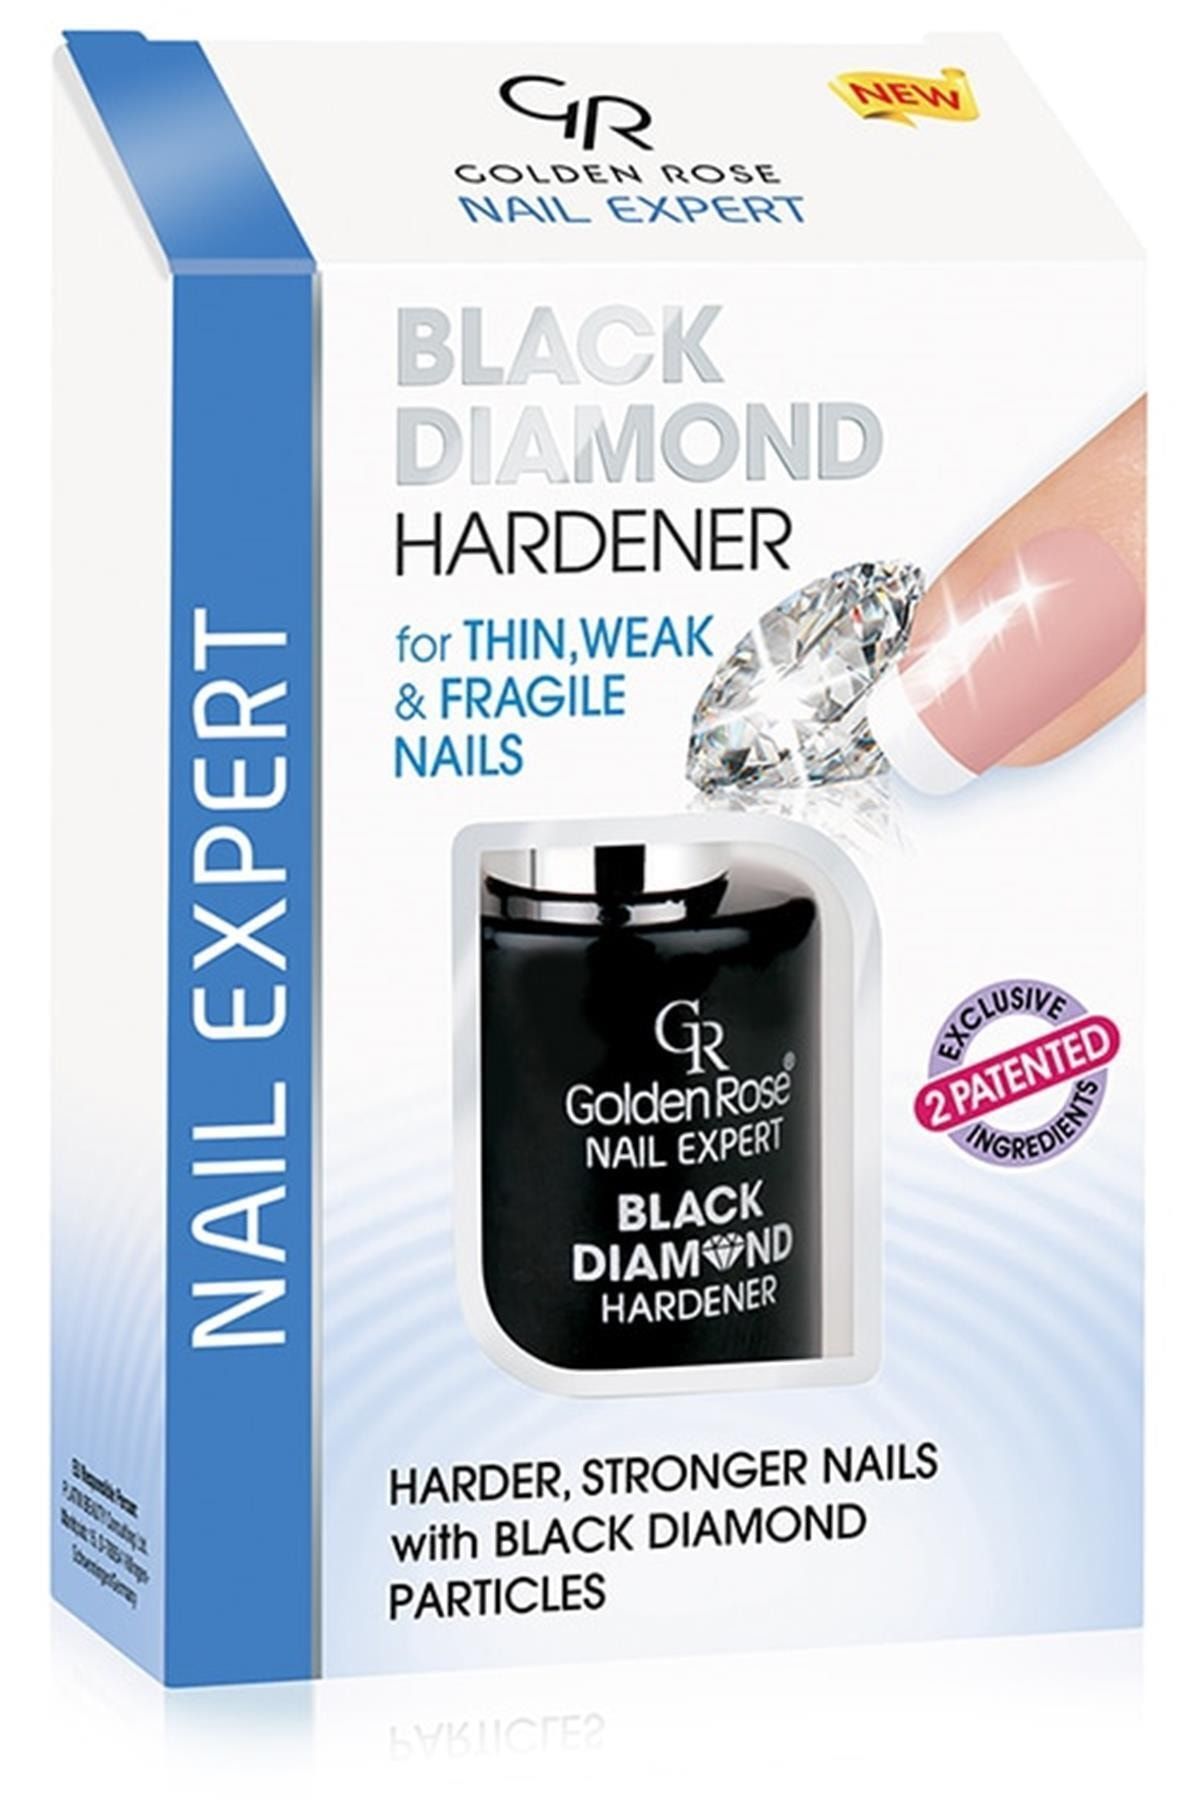 Golden Rose Marka: Nail Expert Black Diamond Hardener Tırnak Güçlendirici Kategori: Takma Tırnak Ve